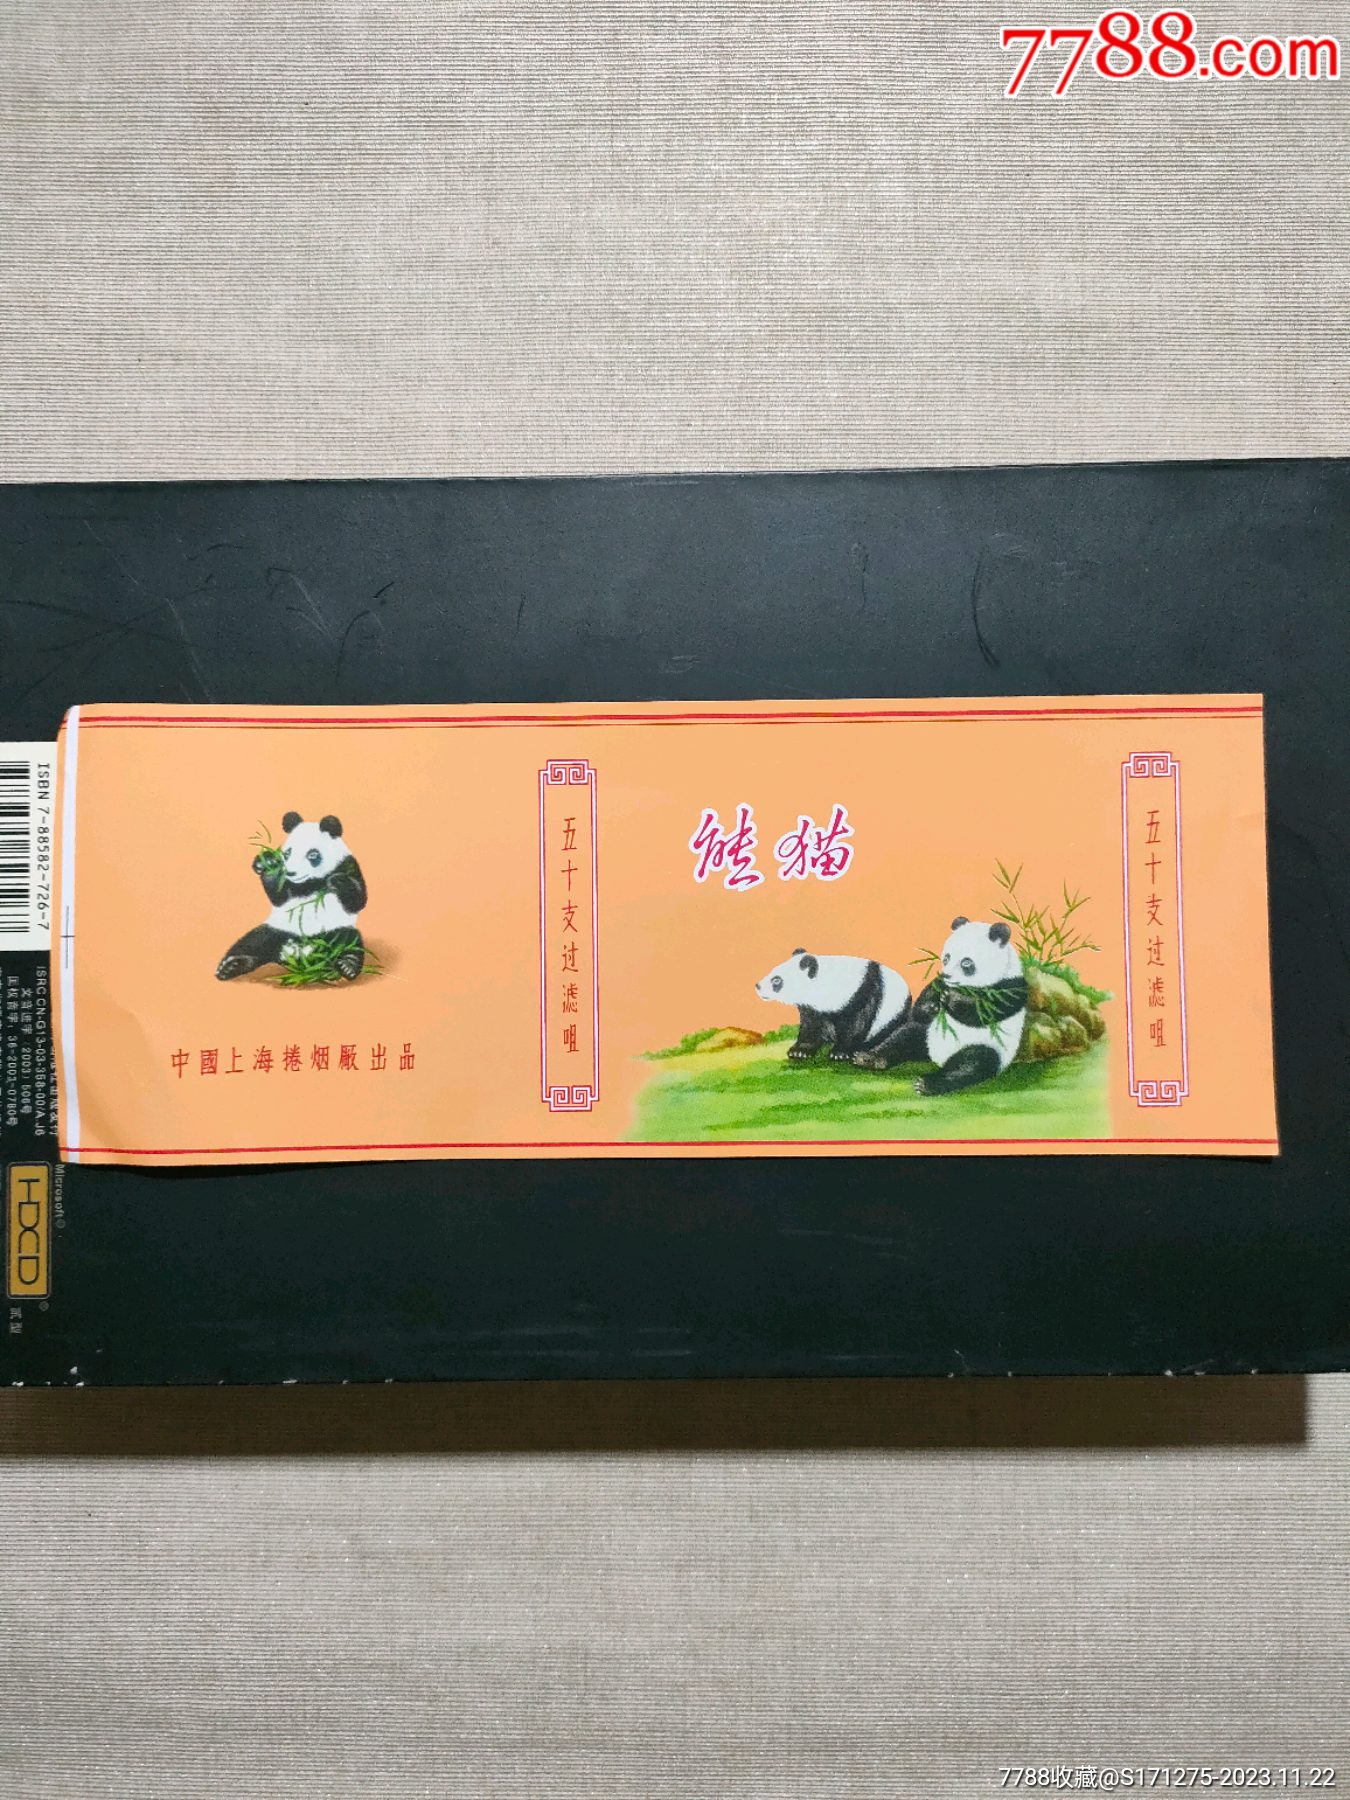 熊猫香烟香港特区忠告图片